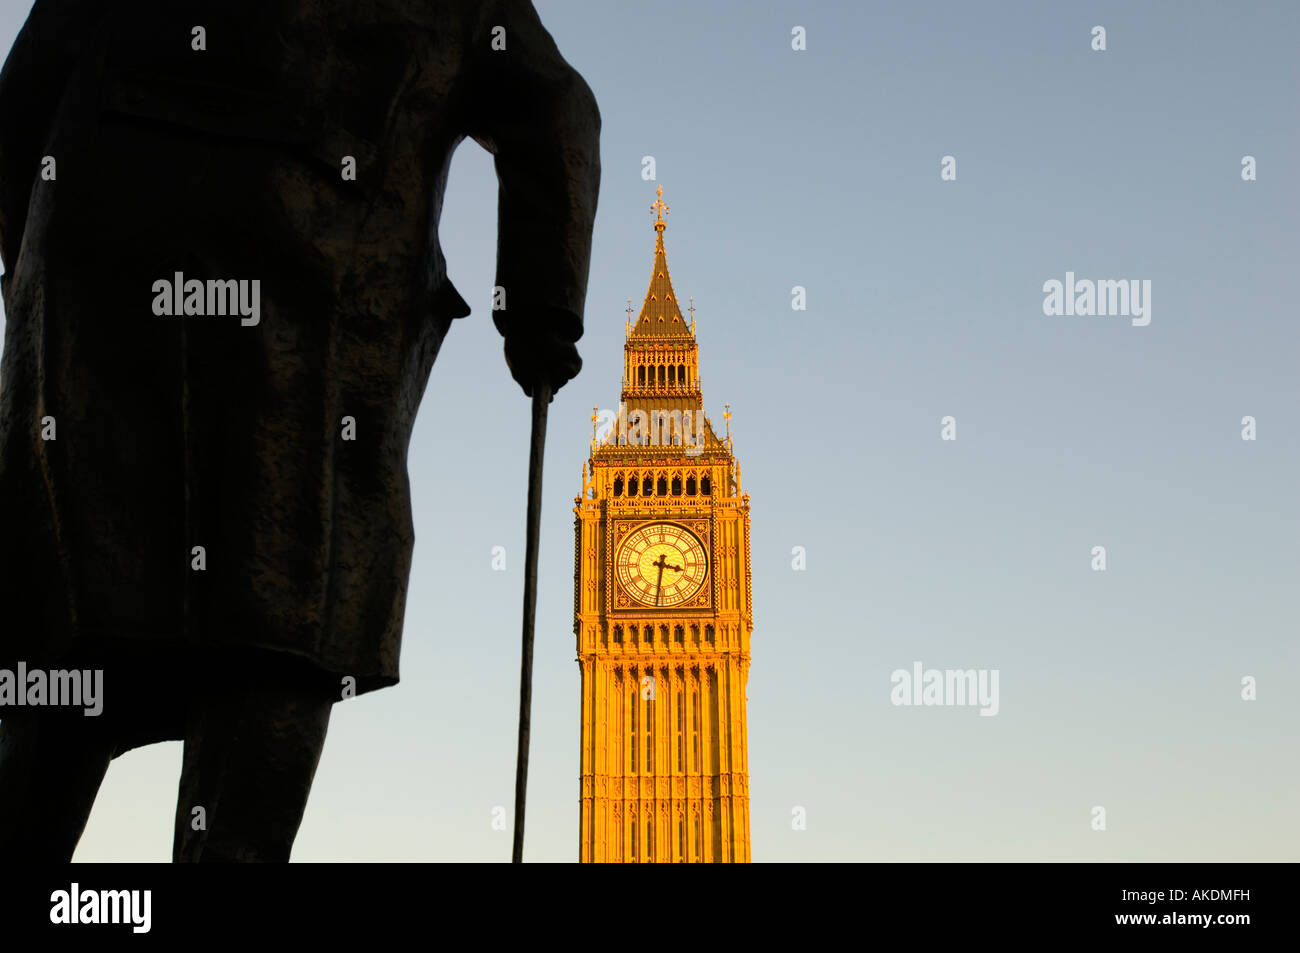 Statue de Sir Winston Churchil sur la place du Parlement et la tour de l'horloge de Maisons du Parlement, Big Ben Londres Royaume Uni. Banque D'Images